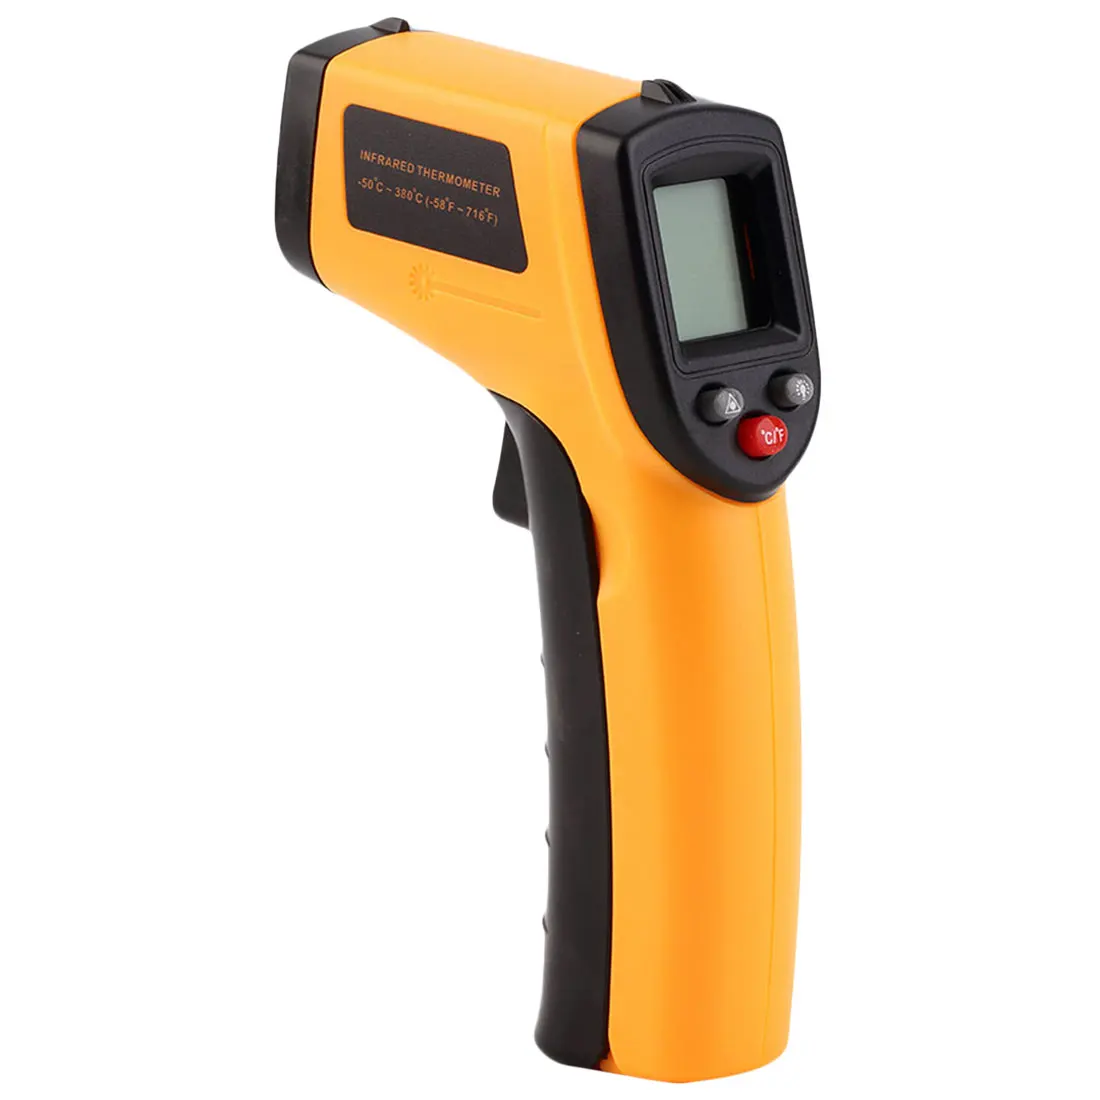 GM320-50~ 380C цифровой инфракрасный термометр Бесконтактный инфракрасный термометр пирометр ИК лазерный измеритель температуры пистолет - Цвет: Цвет: желтый